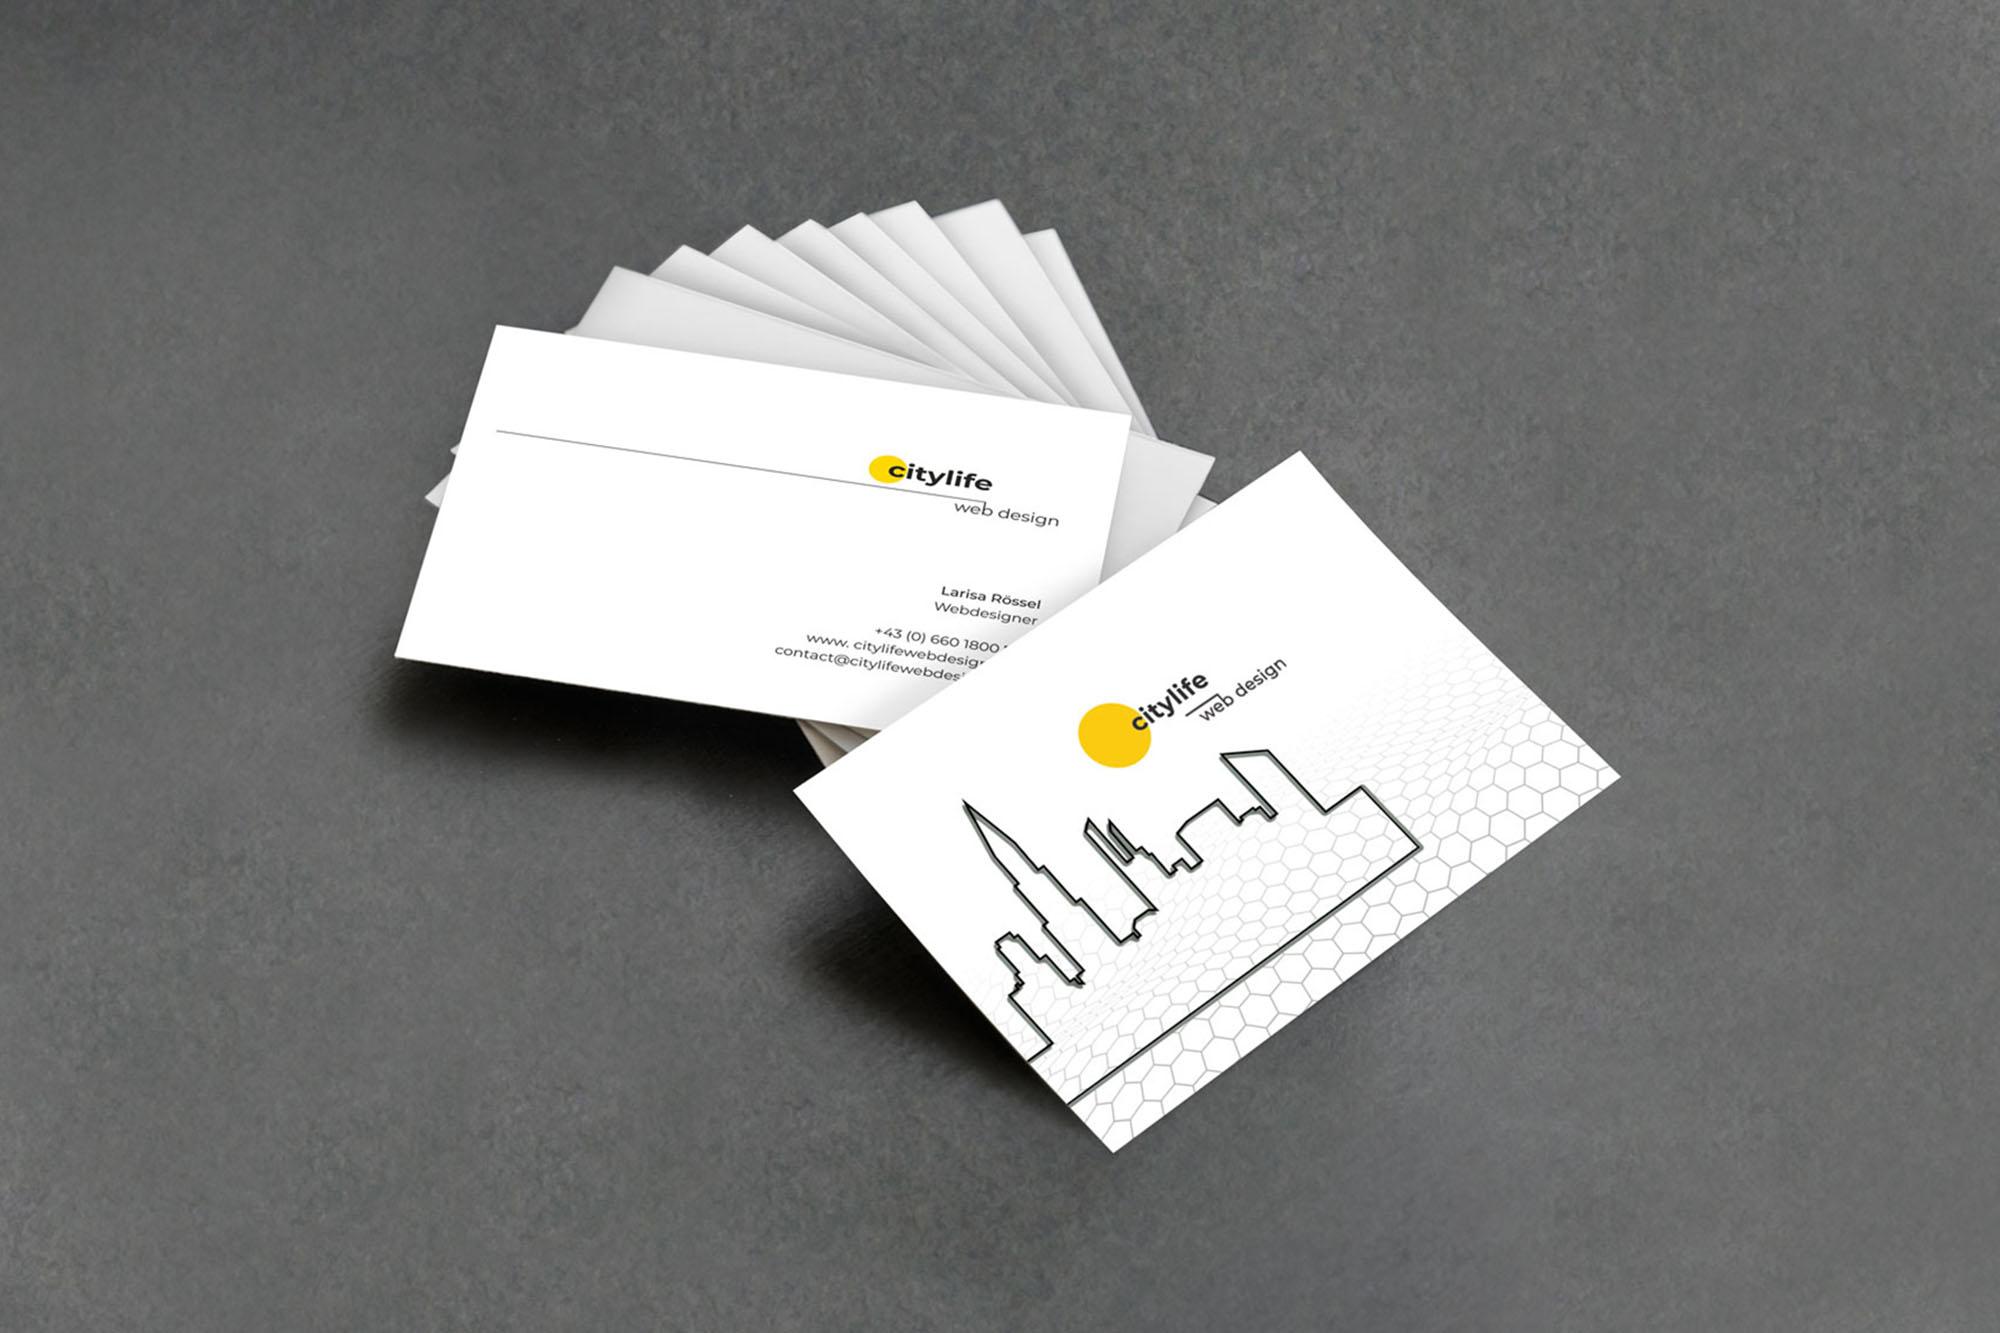 Gestaltung der Visitenkarten für die Citylife Webdesign Agentur